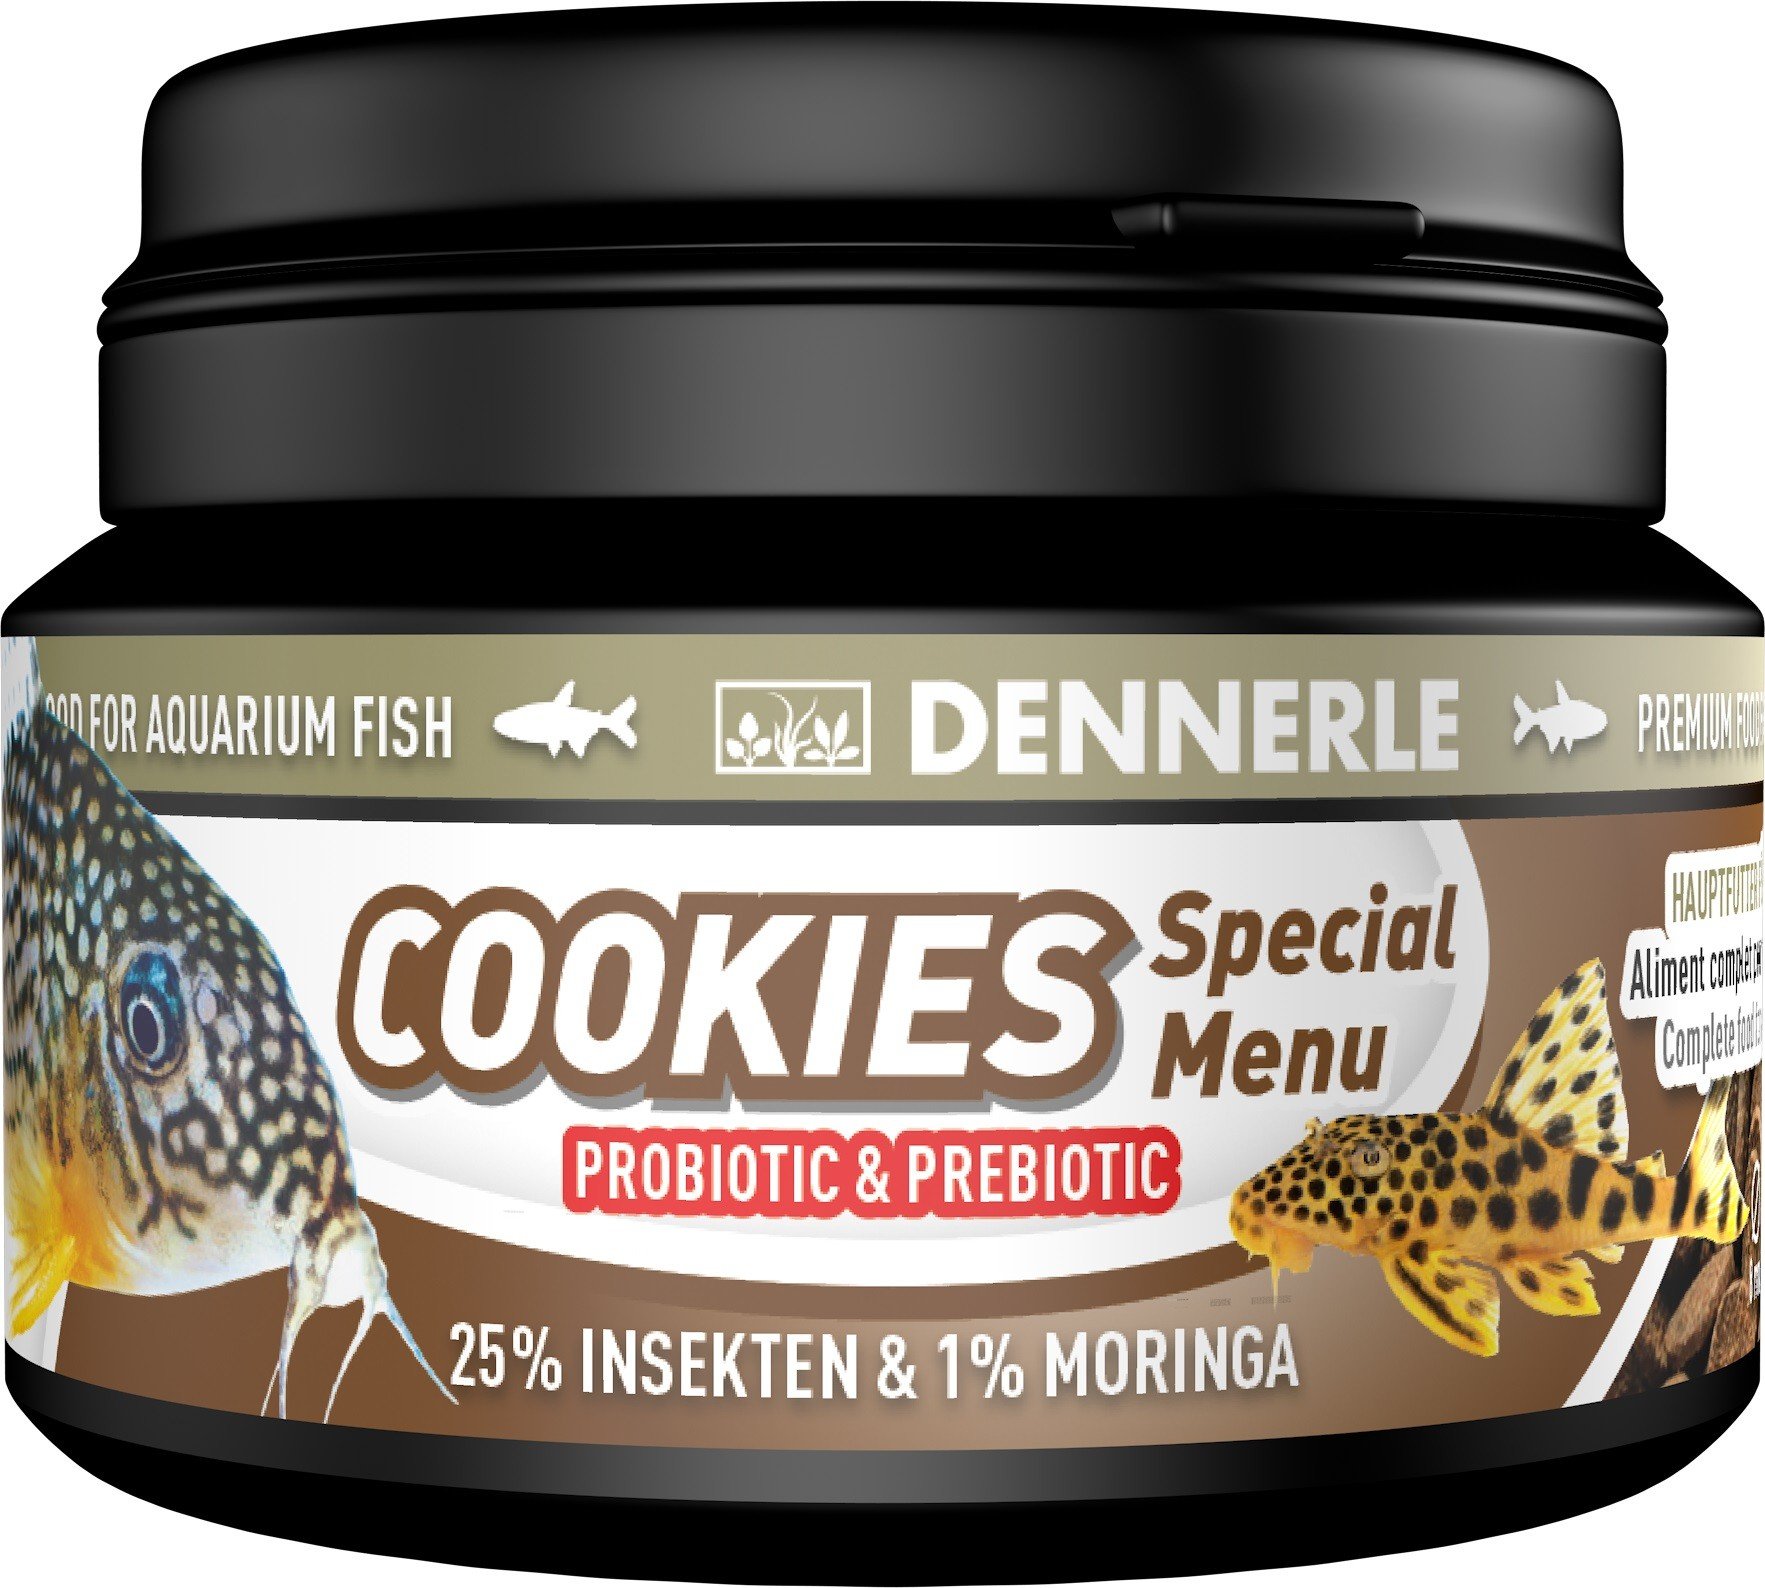 DENNERLE Cookies Special Menu para peces de fondo